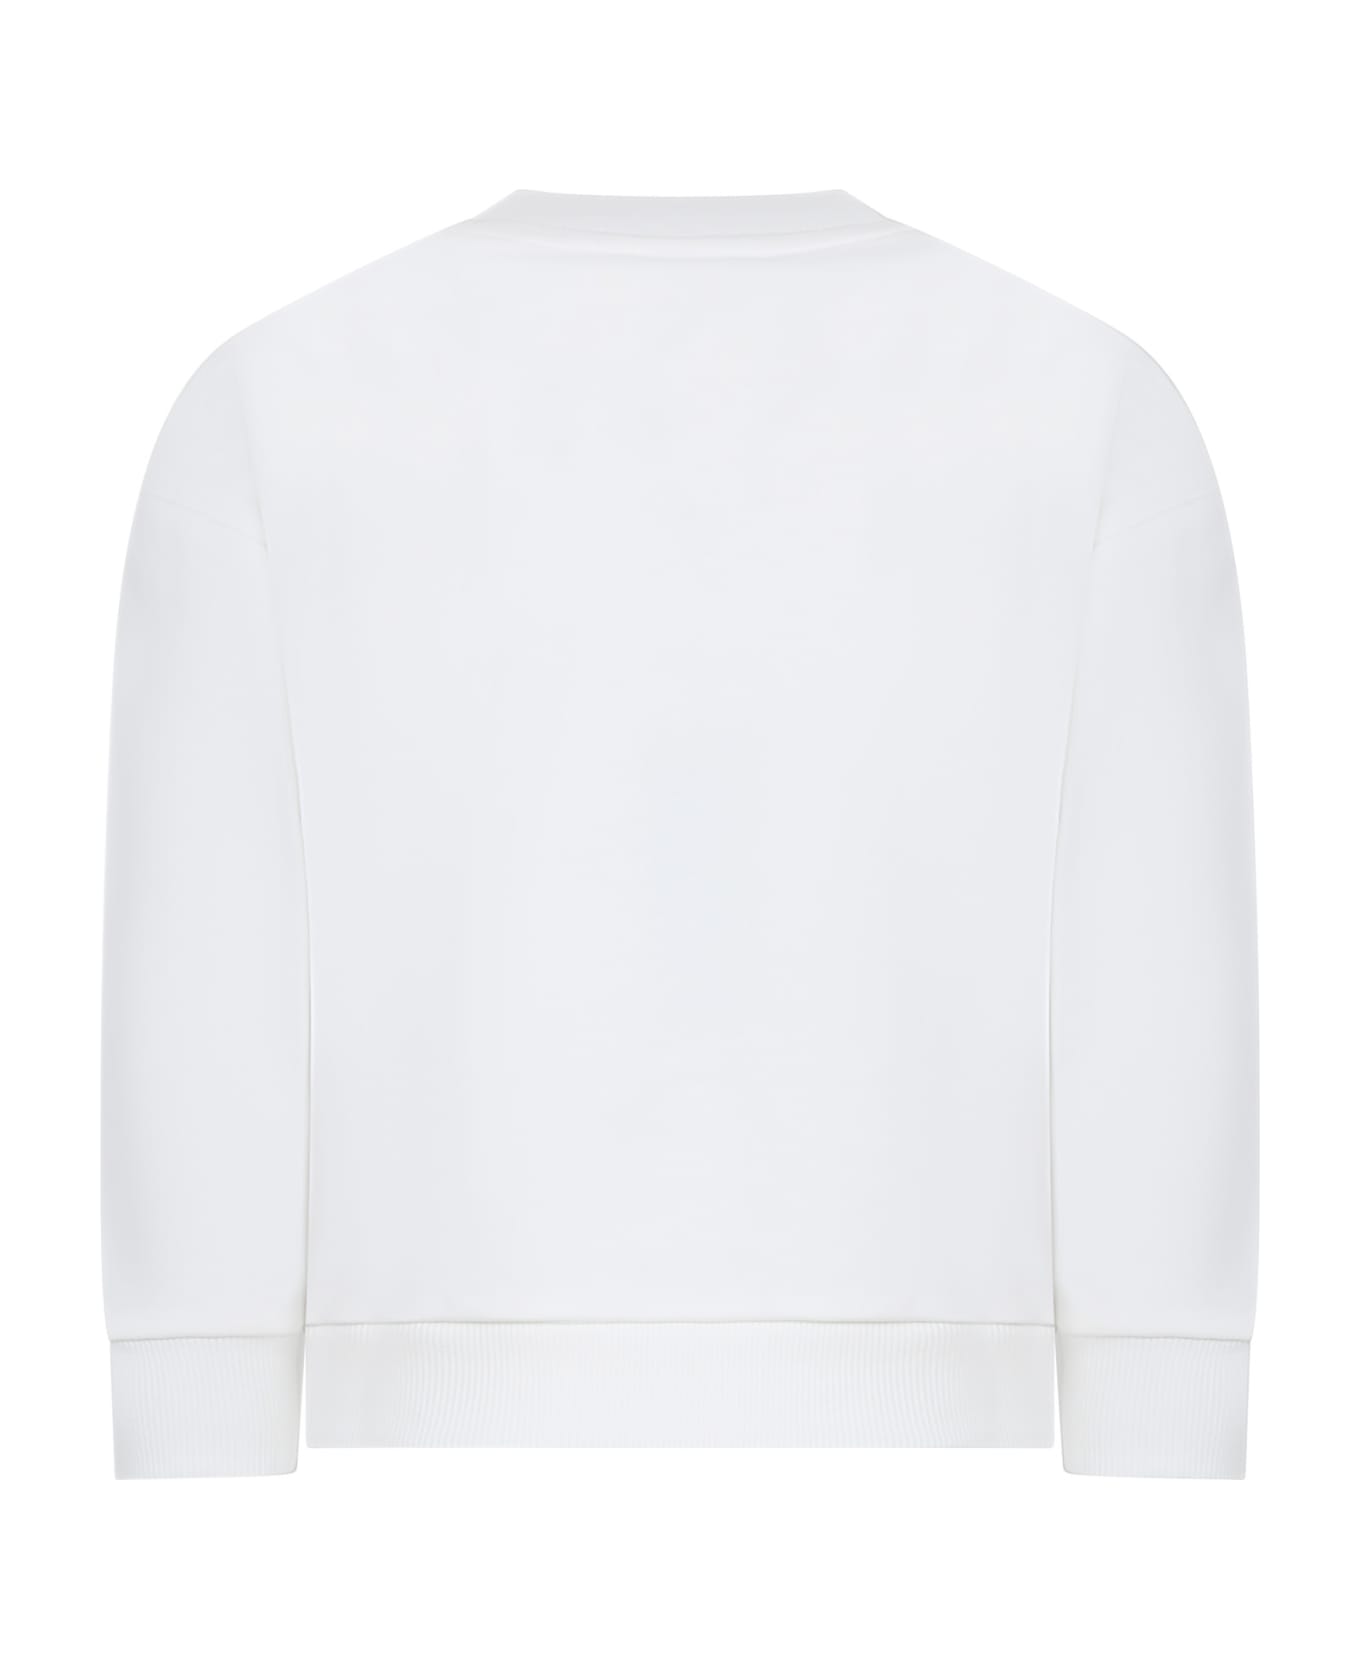 Kenzo Kids Ivory Sweatshirt For Boy With Logo - Bianco